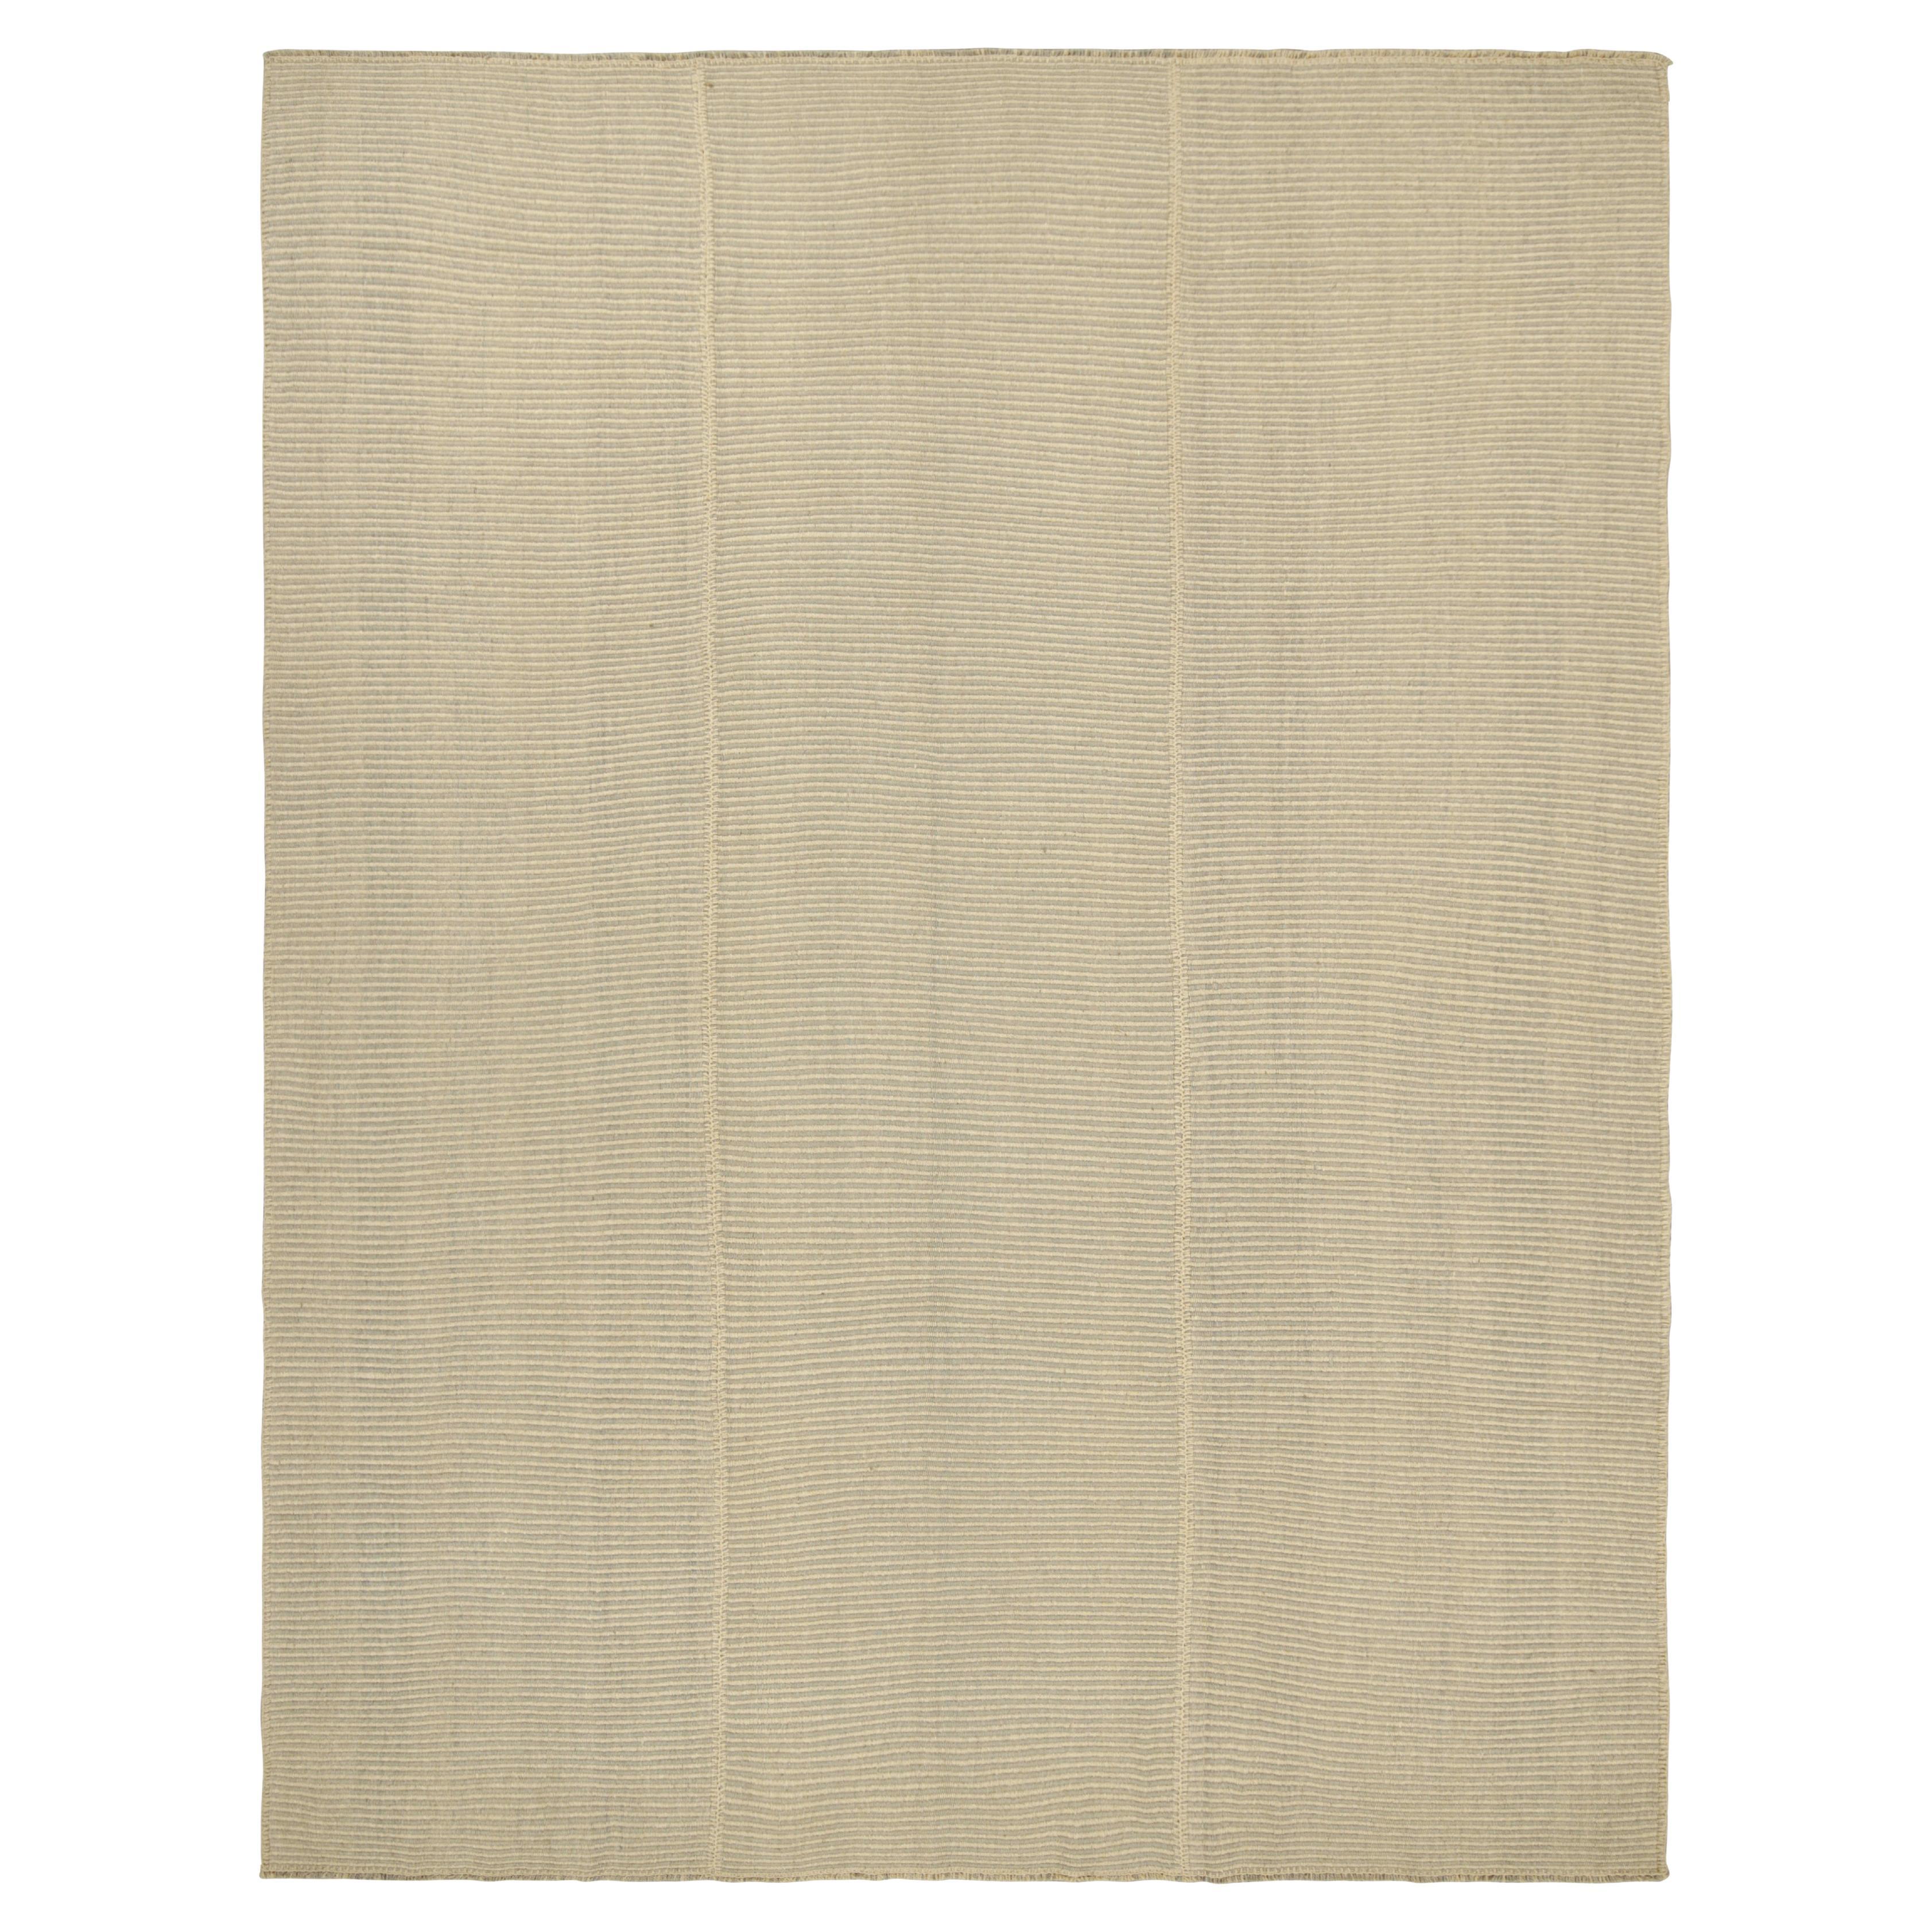 Rug & Kilim's Contemporary Kilim in Beige-Brown Textural Stripes (Kilim contemporain à rayures texturées beige et marron) en vente